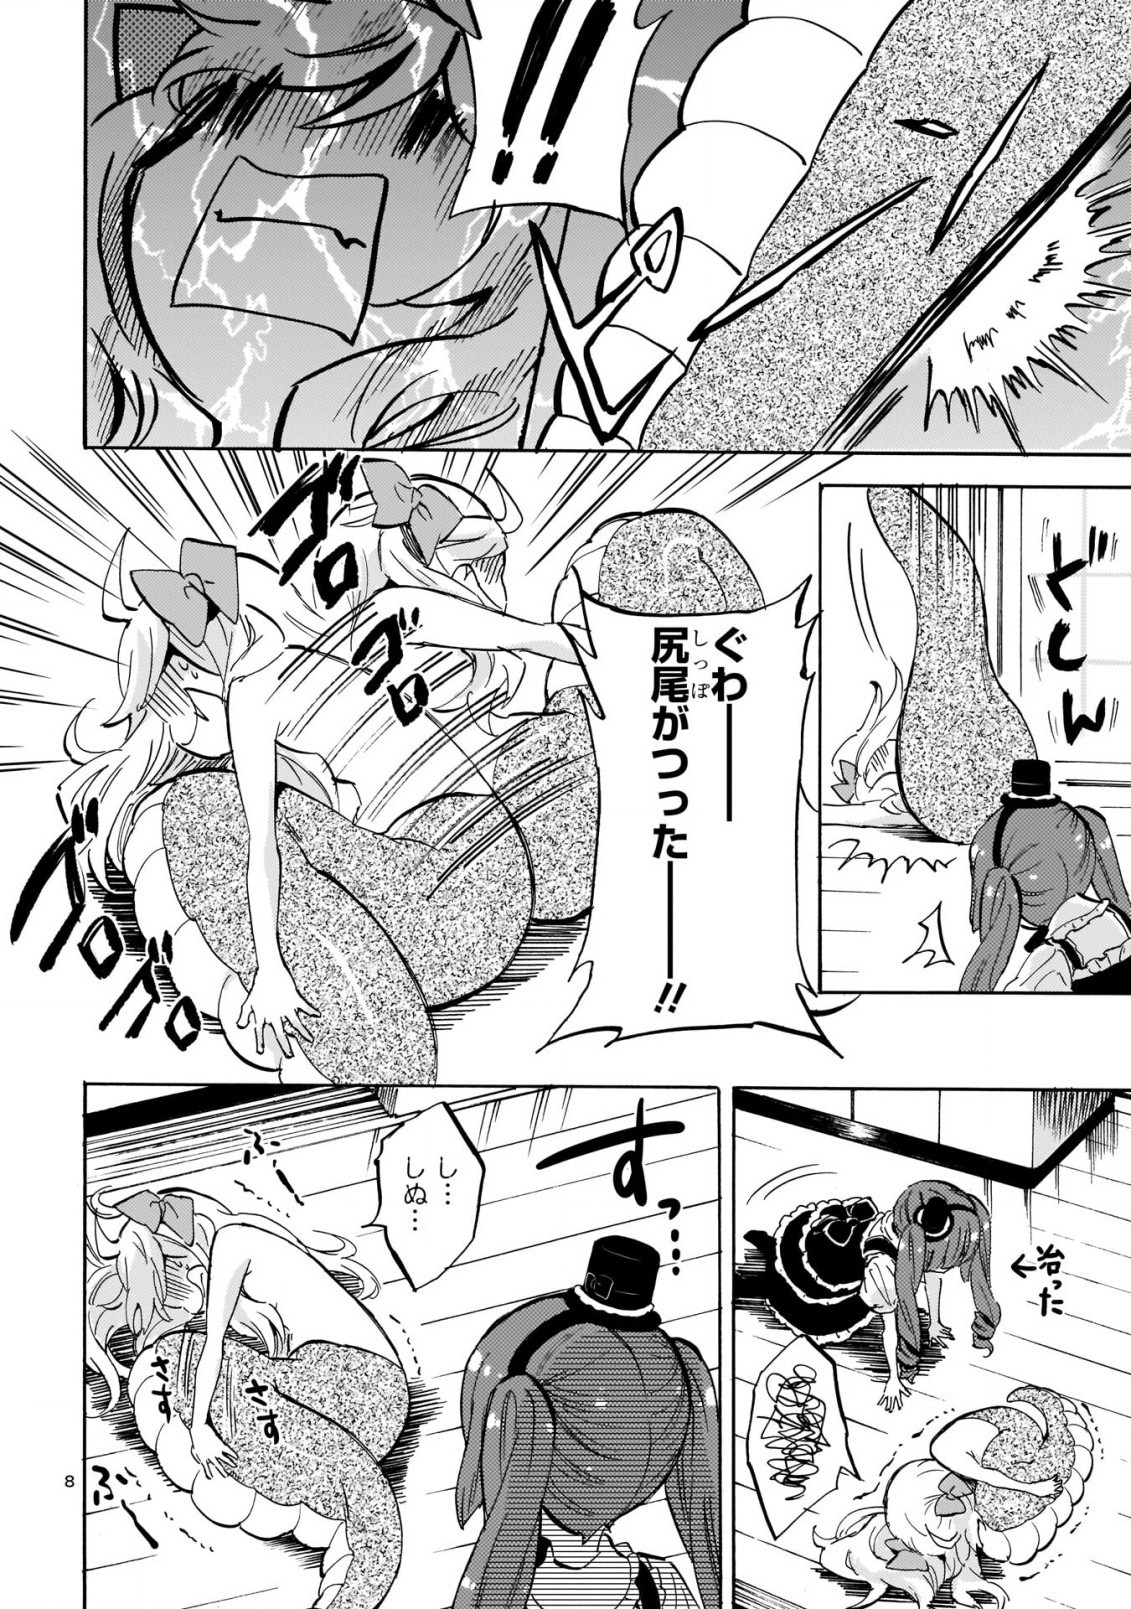 Jashin-chan Dropkick - Chapter 198 - Page 8